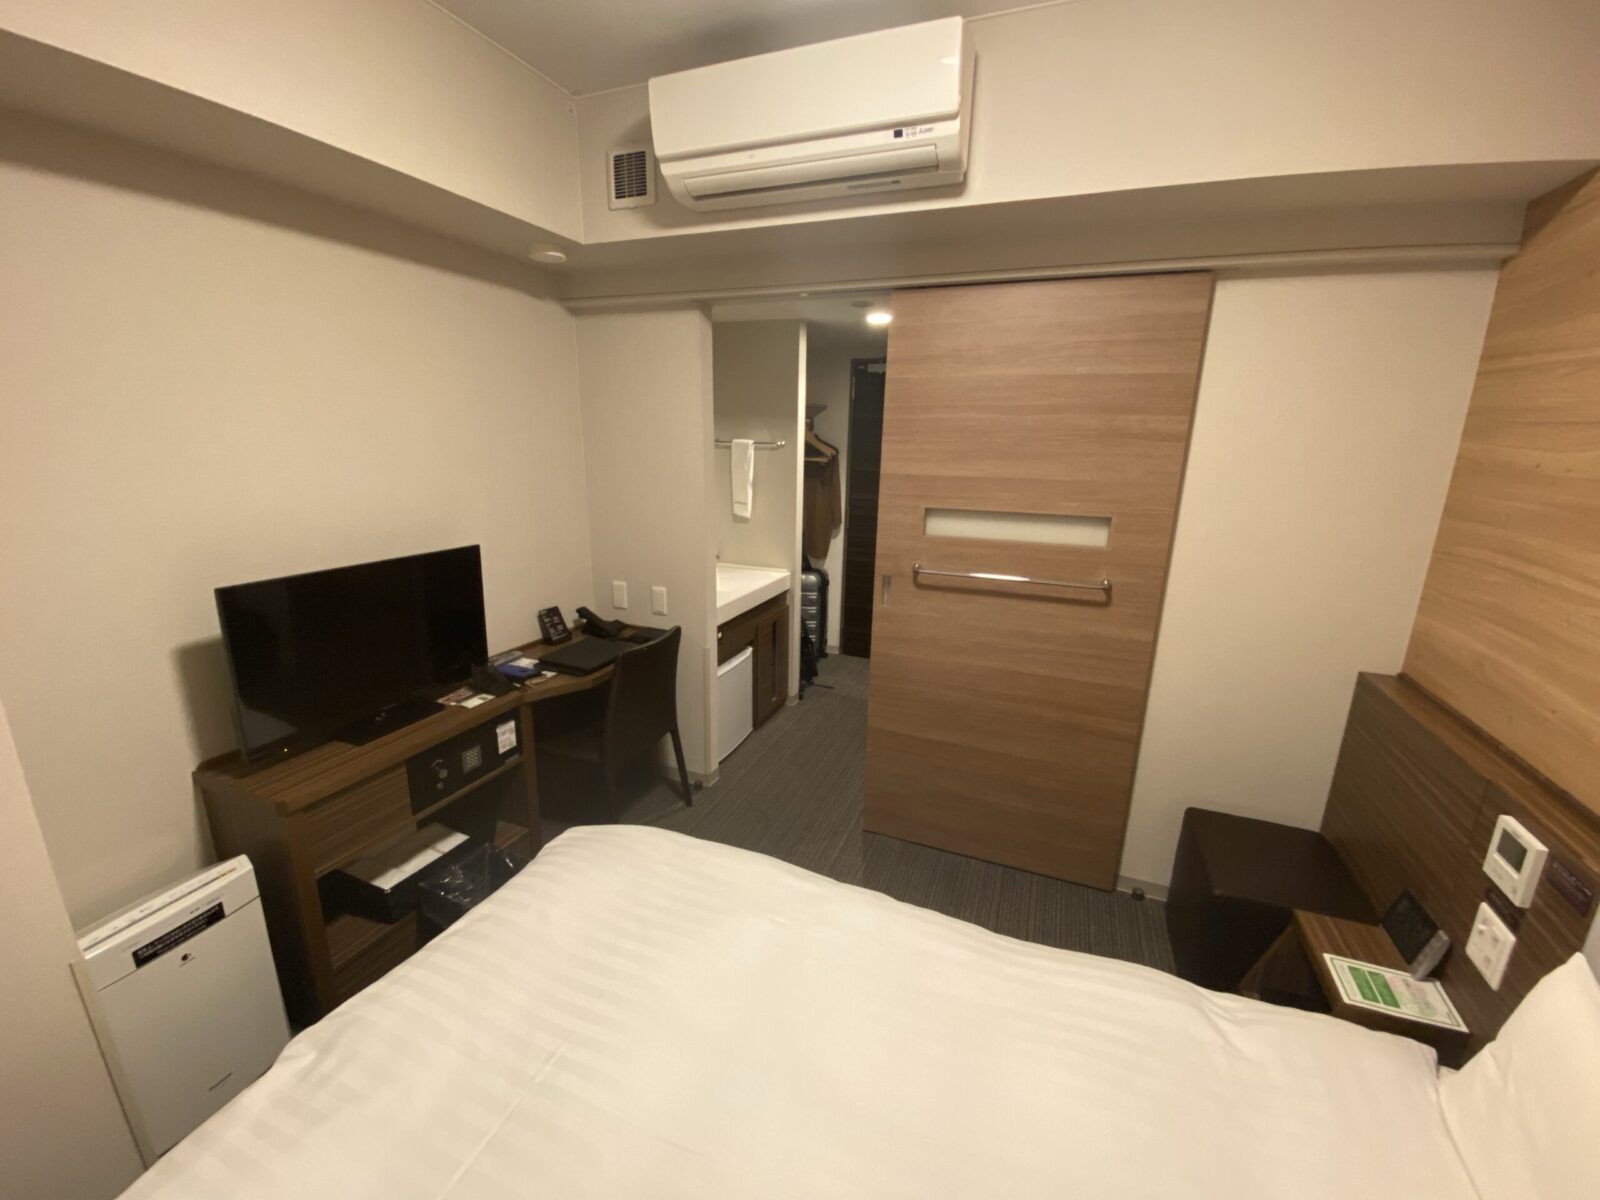 Dormy Inn Abashiri